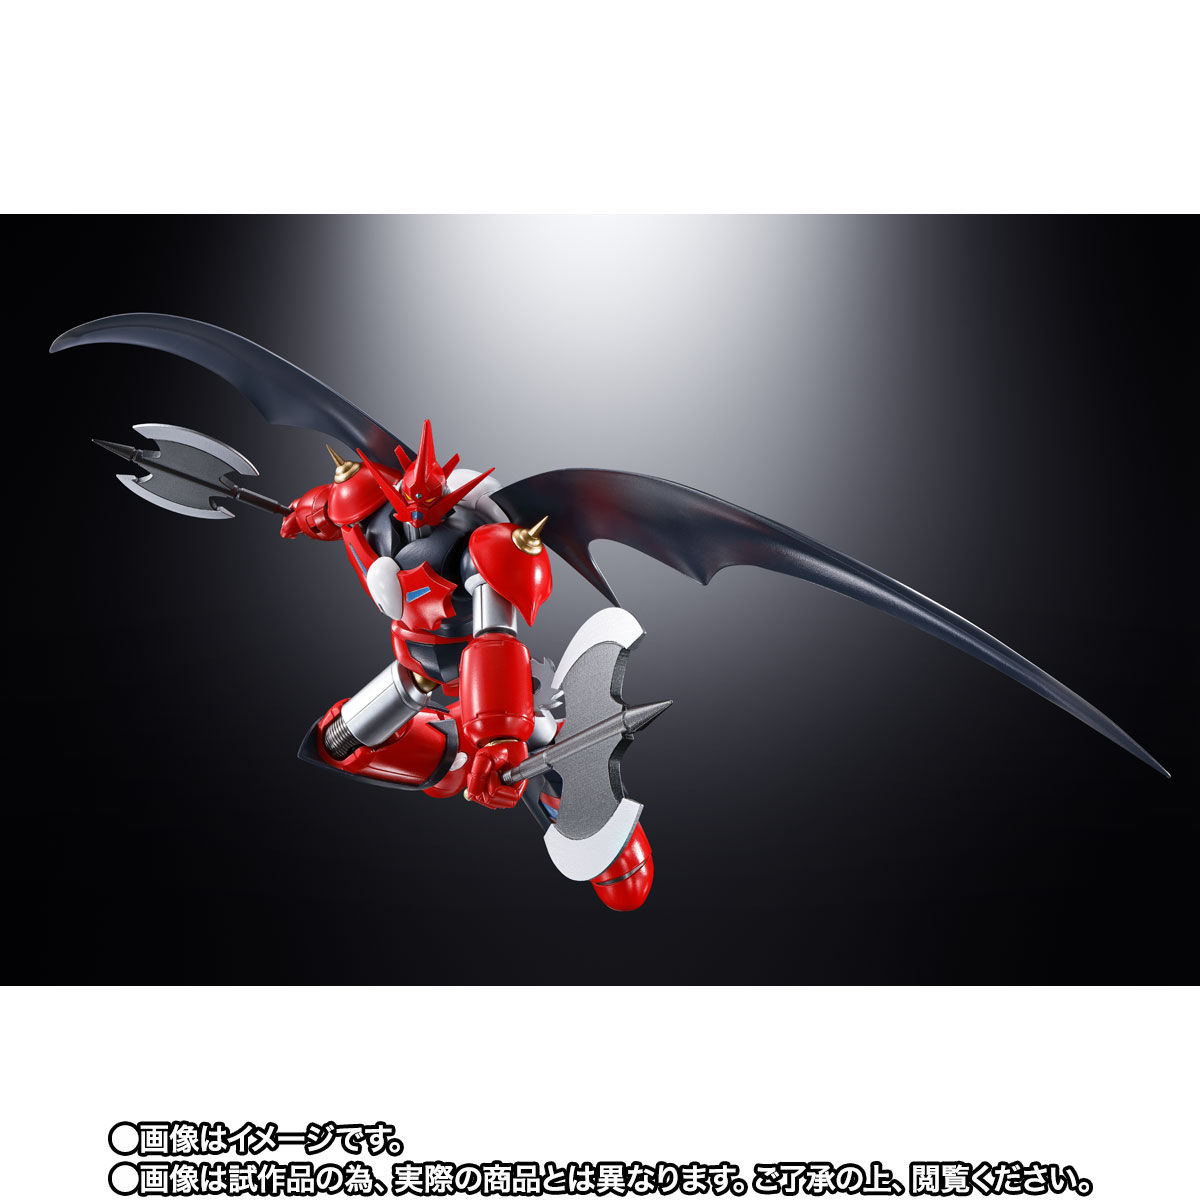 【限定販売】超合金魂『GX-98 ゲッターD2』ゲッターロボ アーク 可動フィギュア-004